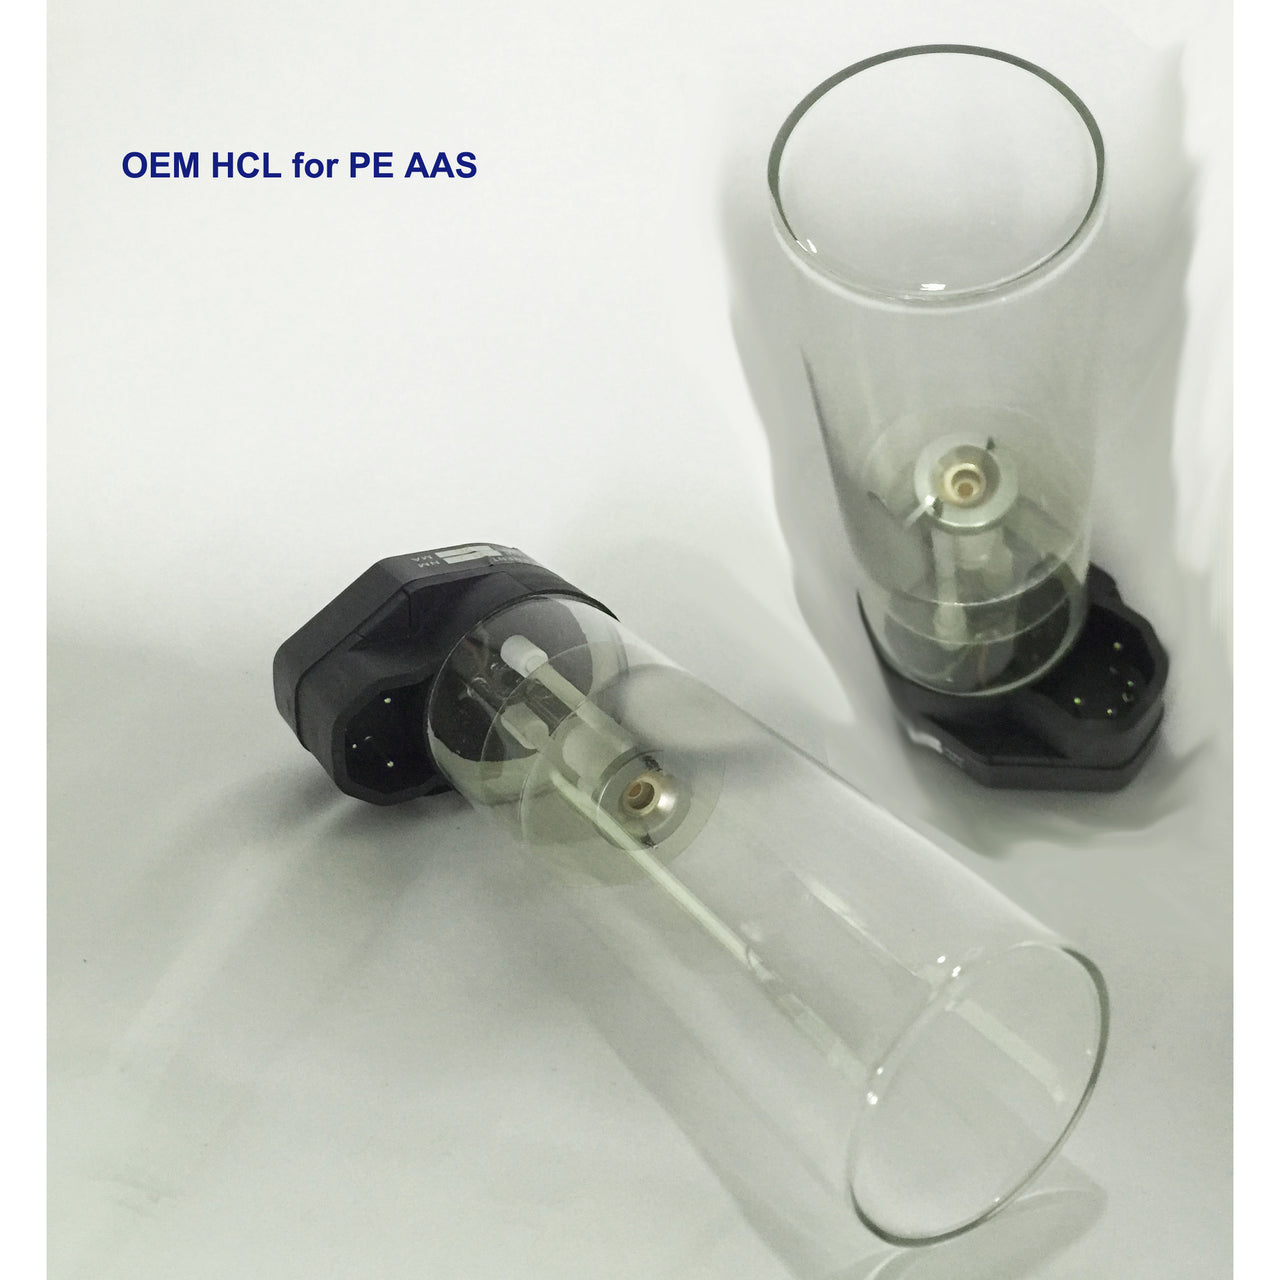 Hollow Cathode Lamp, Rhenium - Re